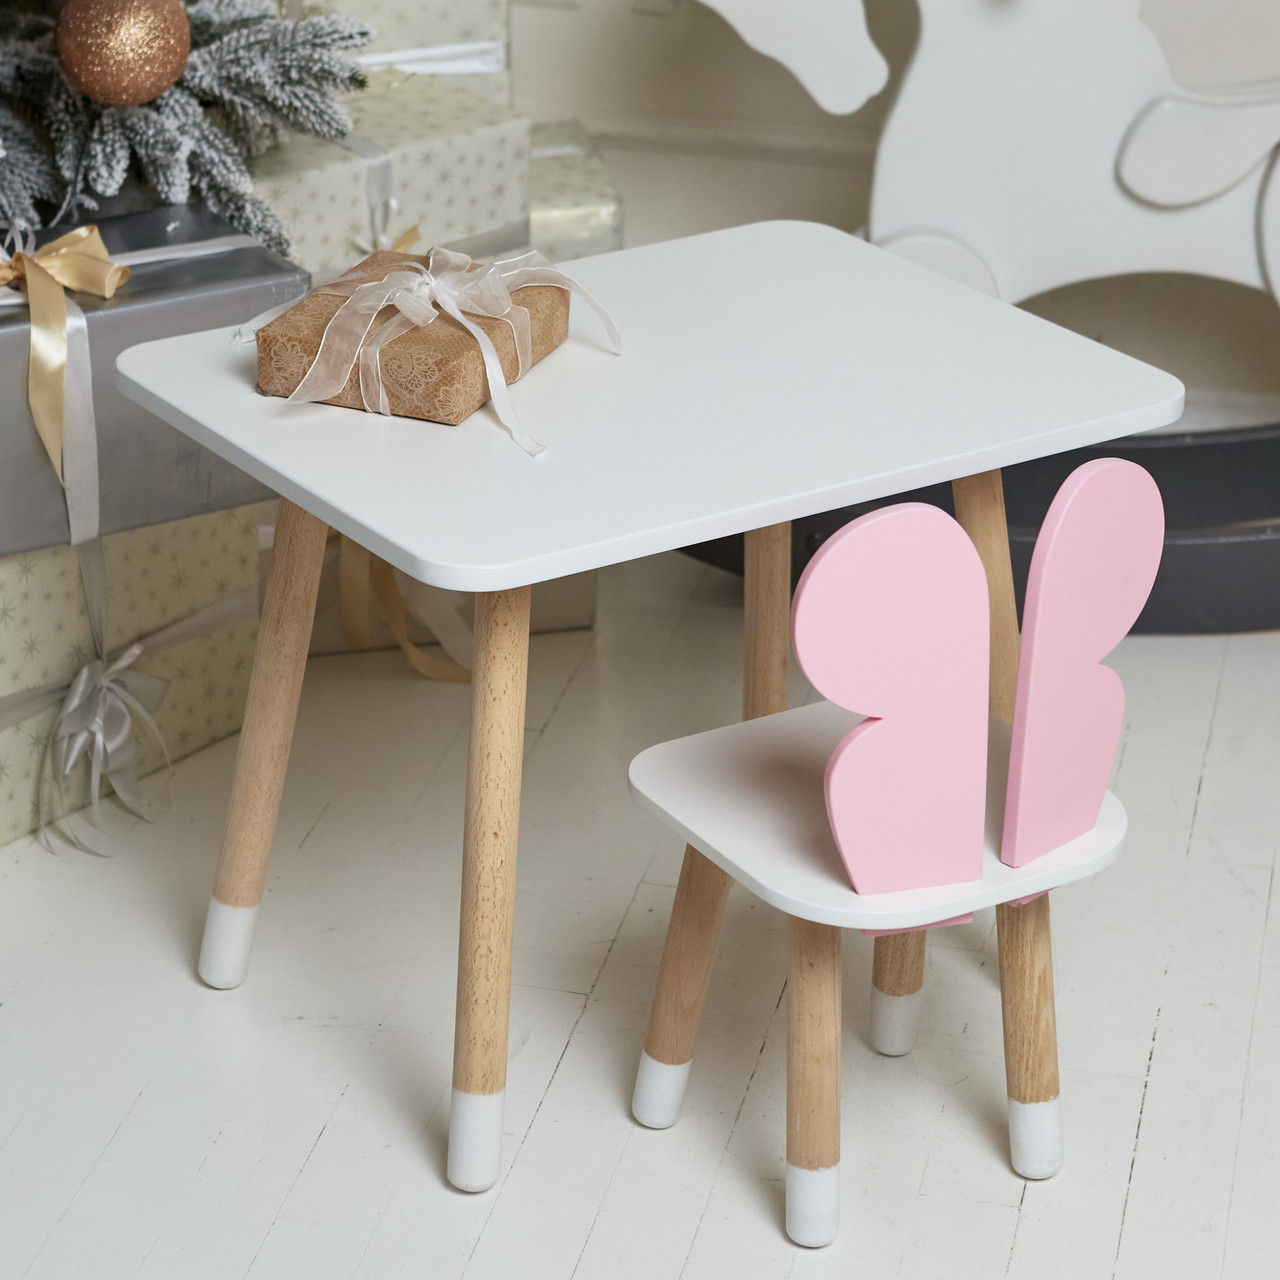 Дитячий прямокутний стіл та стільчик рожевий метелик з білим сидінням. Дитячий  білий столик